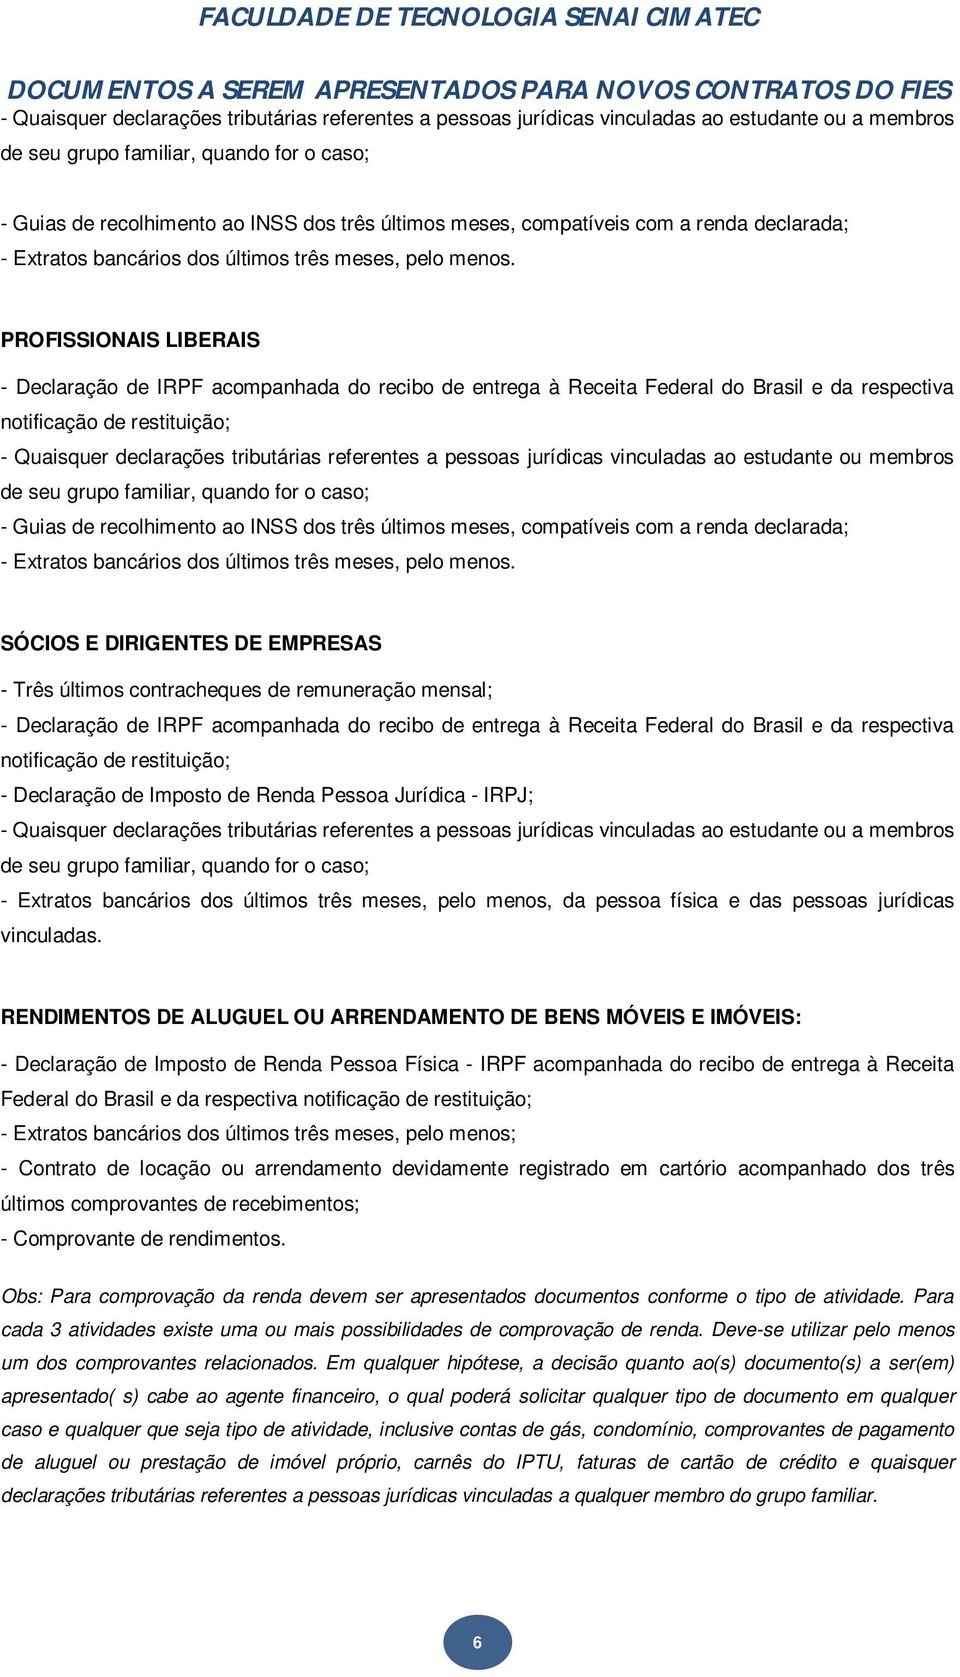 RENDIMENTOS DE ALUGUEL OU ARRENDAMENTO DE BENS MÓVEIS E IMÓVEIS: - Declaração de Imposto de Renda Pessoa Física - IRPF acompanhada do recibo de entrega à Receita Federal do Brasil e da respectiva -